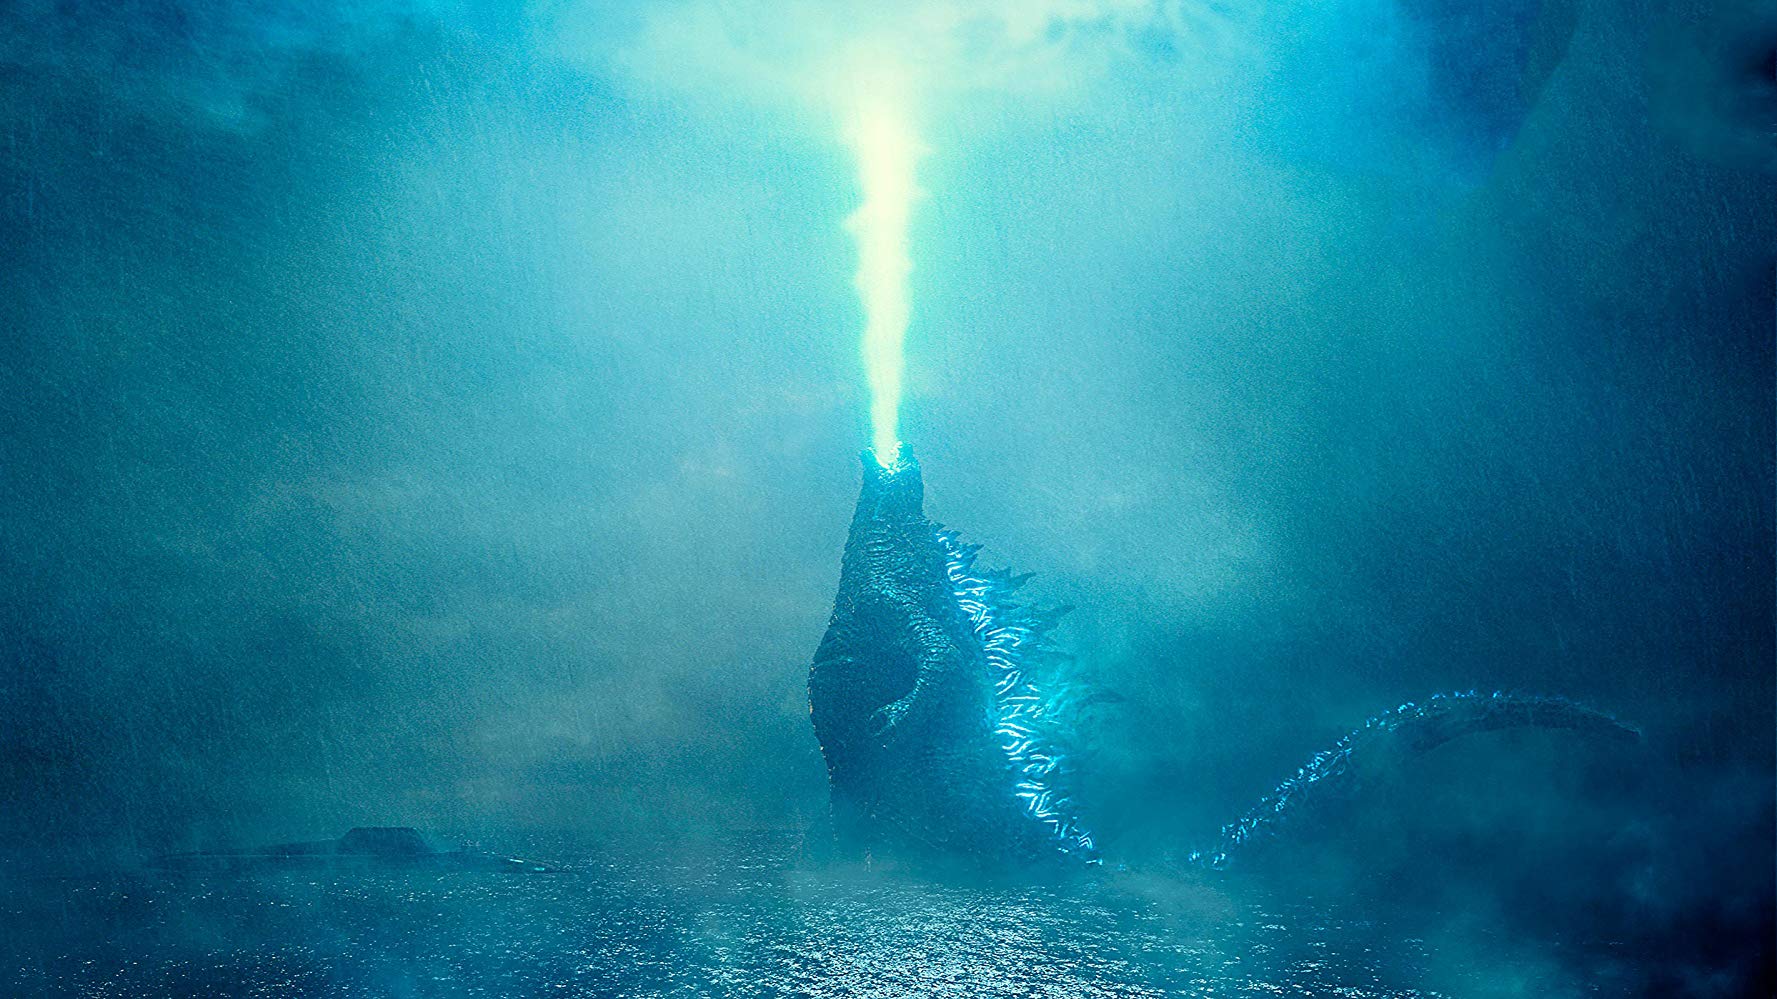 Godzilla Rey de los monstruos: Opinión de la película